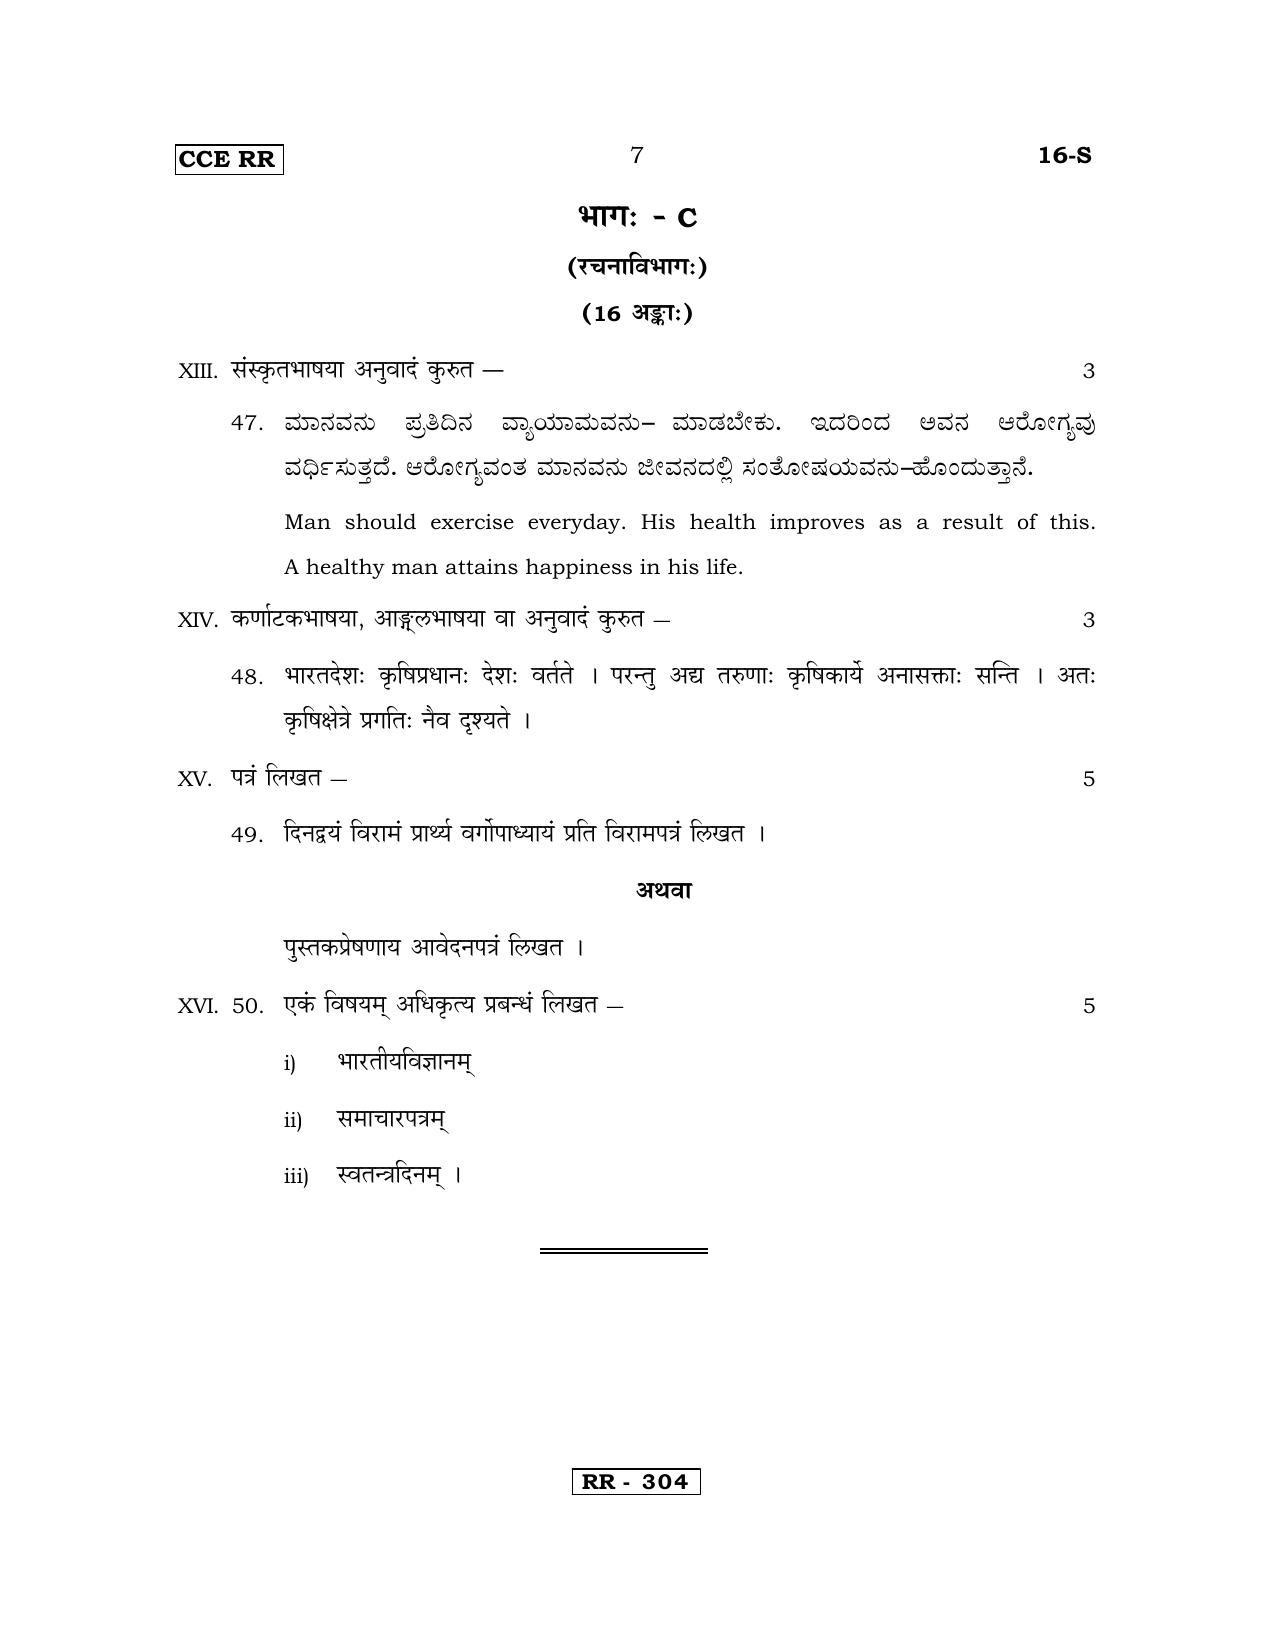 Karnataka SSLC Sanskrit - First Language - SANSKRIT (16-S-CCE RR UNREVISED_17) April 2018 Question Paper - Page 7